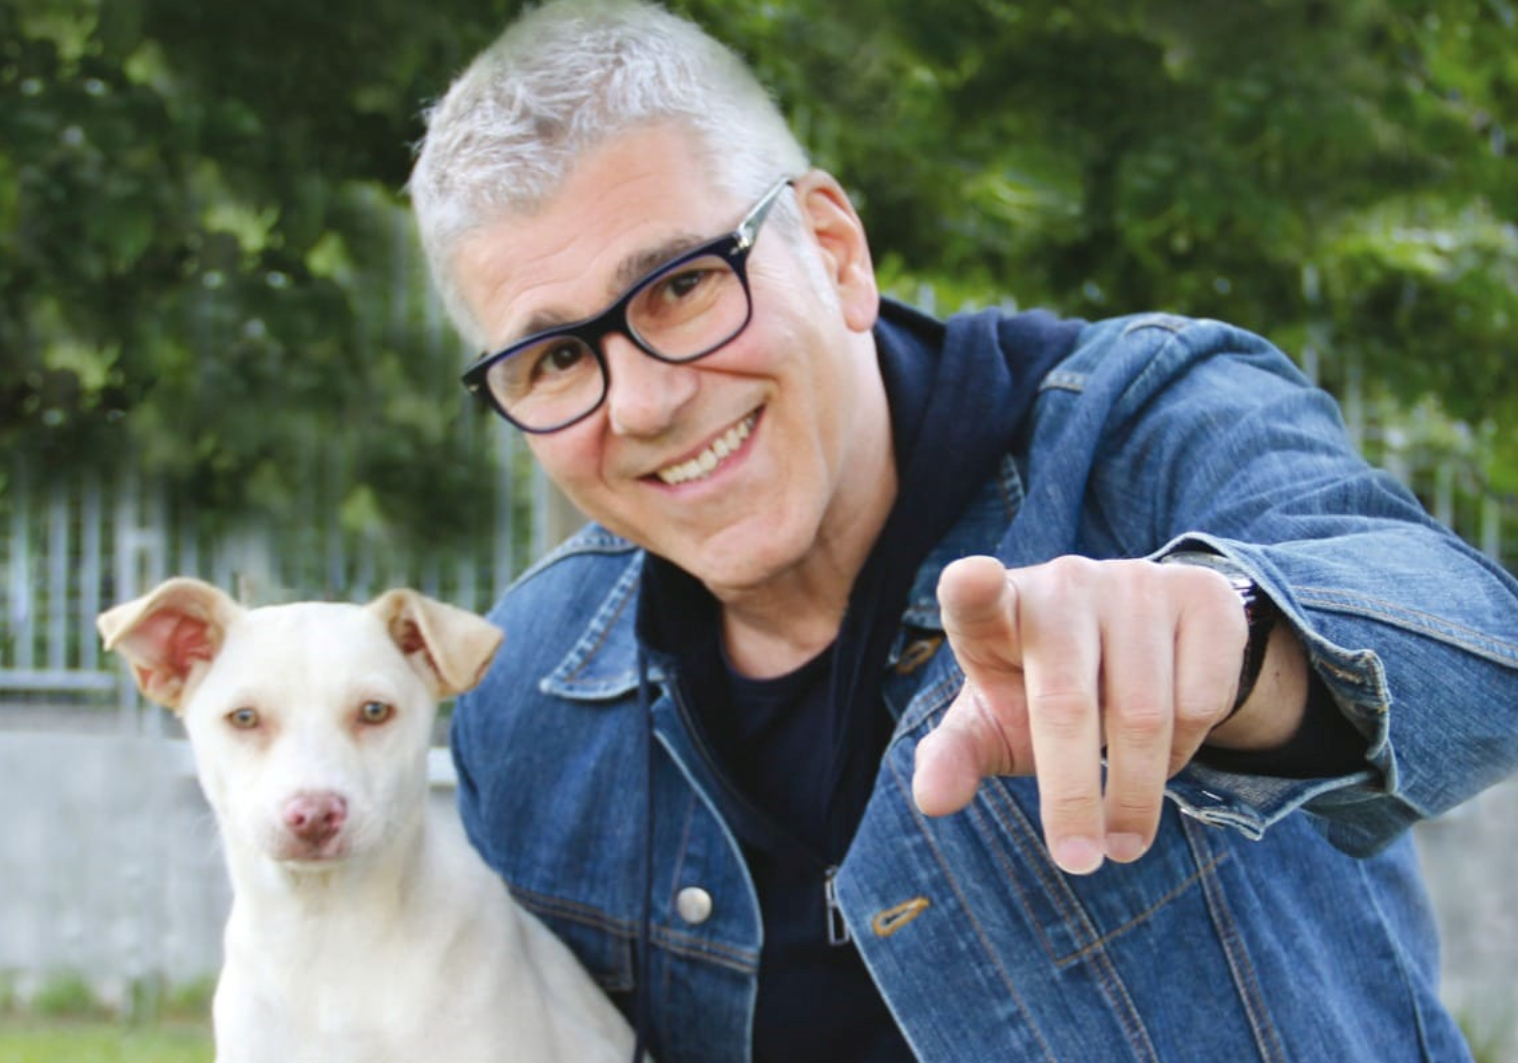 “Un amico non si abbandona”: Michele Zarrillo testimonial per la campagna contro l’abbandono estivo degli animali domestici